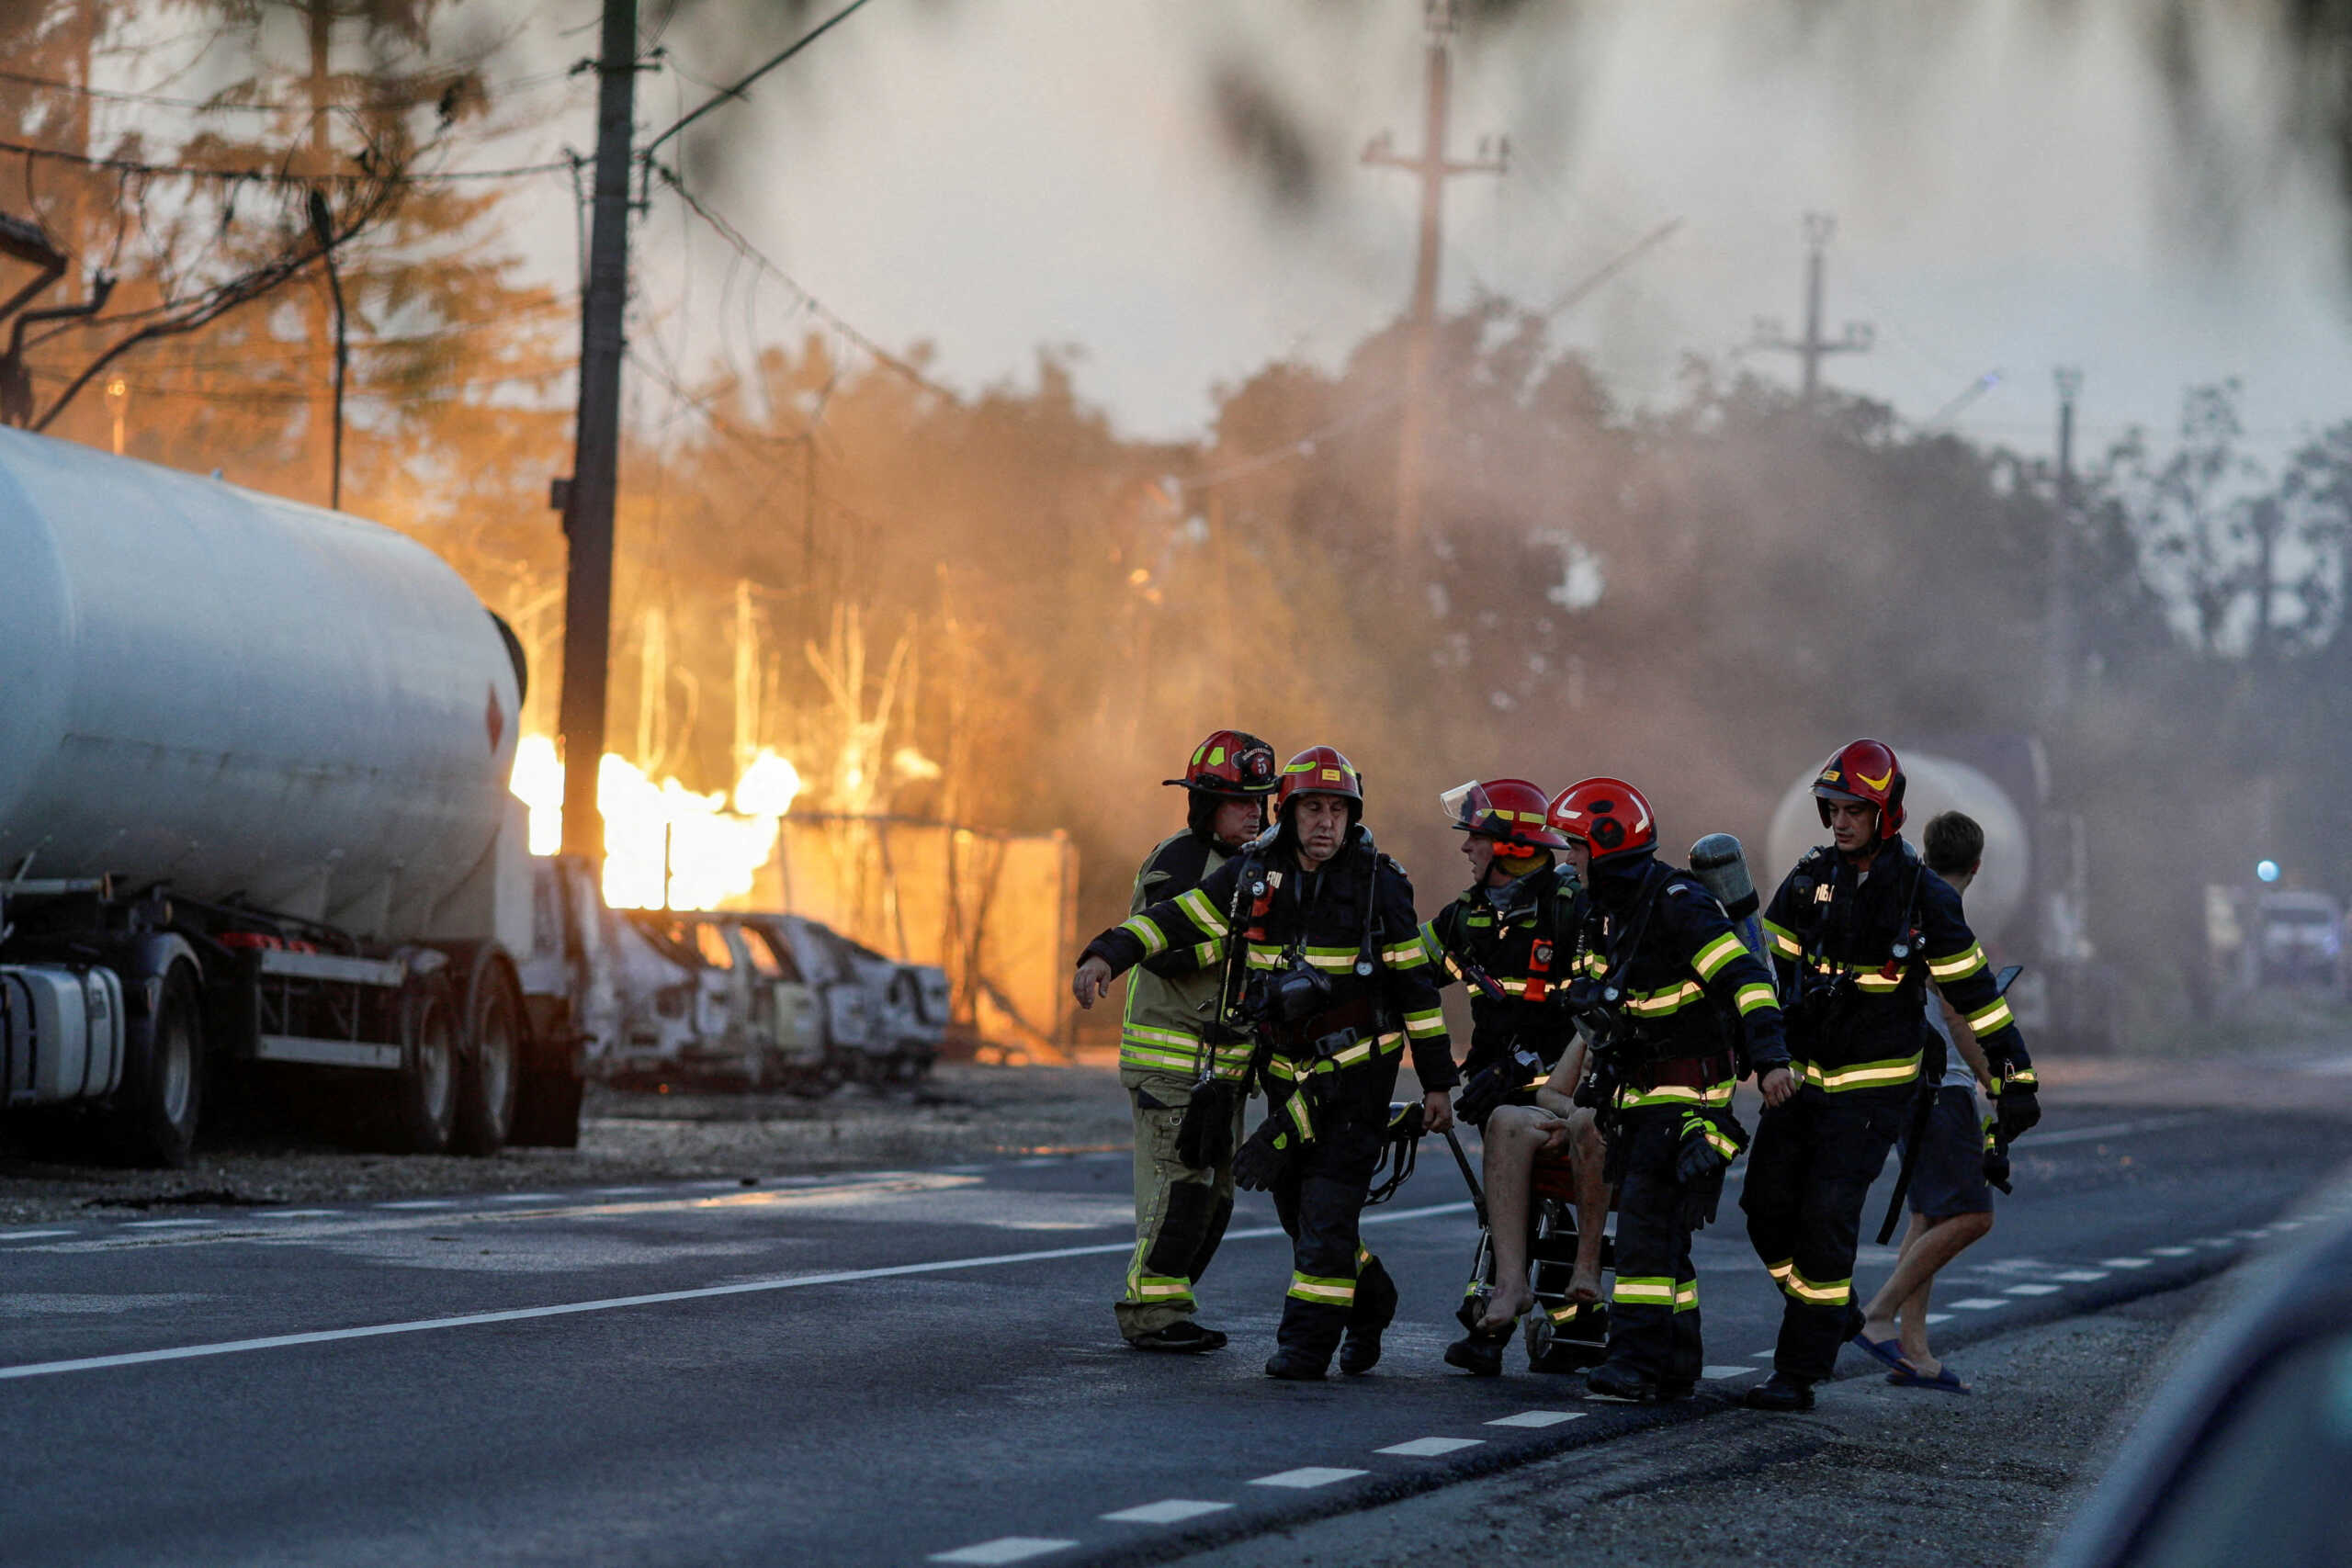 Ρουμανία: Δύο οι νεκροί από τις εκρήξεις σε πρατήριο καυσίμων – Σε Ιταλία και Βέλγιο μεταφέρθηκαν 4 σοβαρά τραυματίες